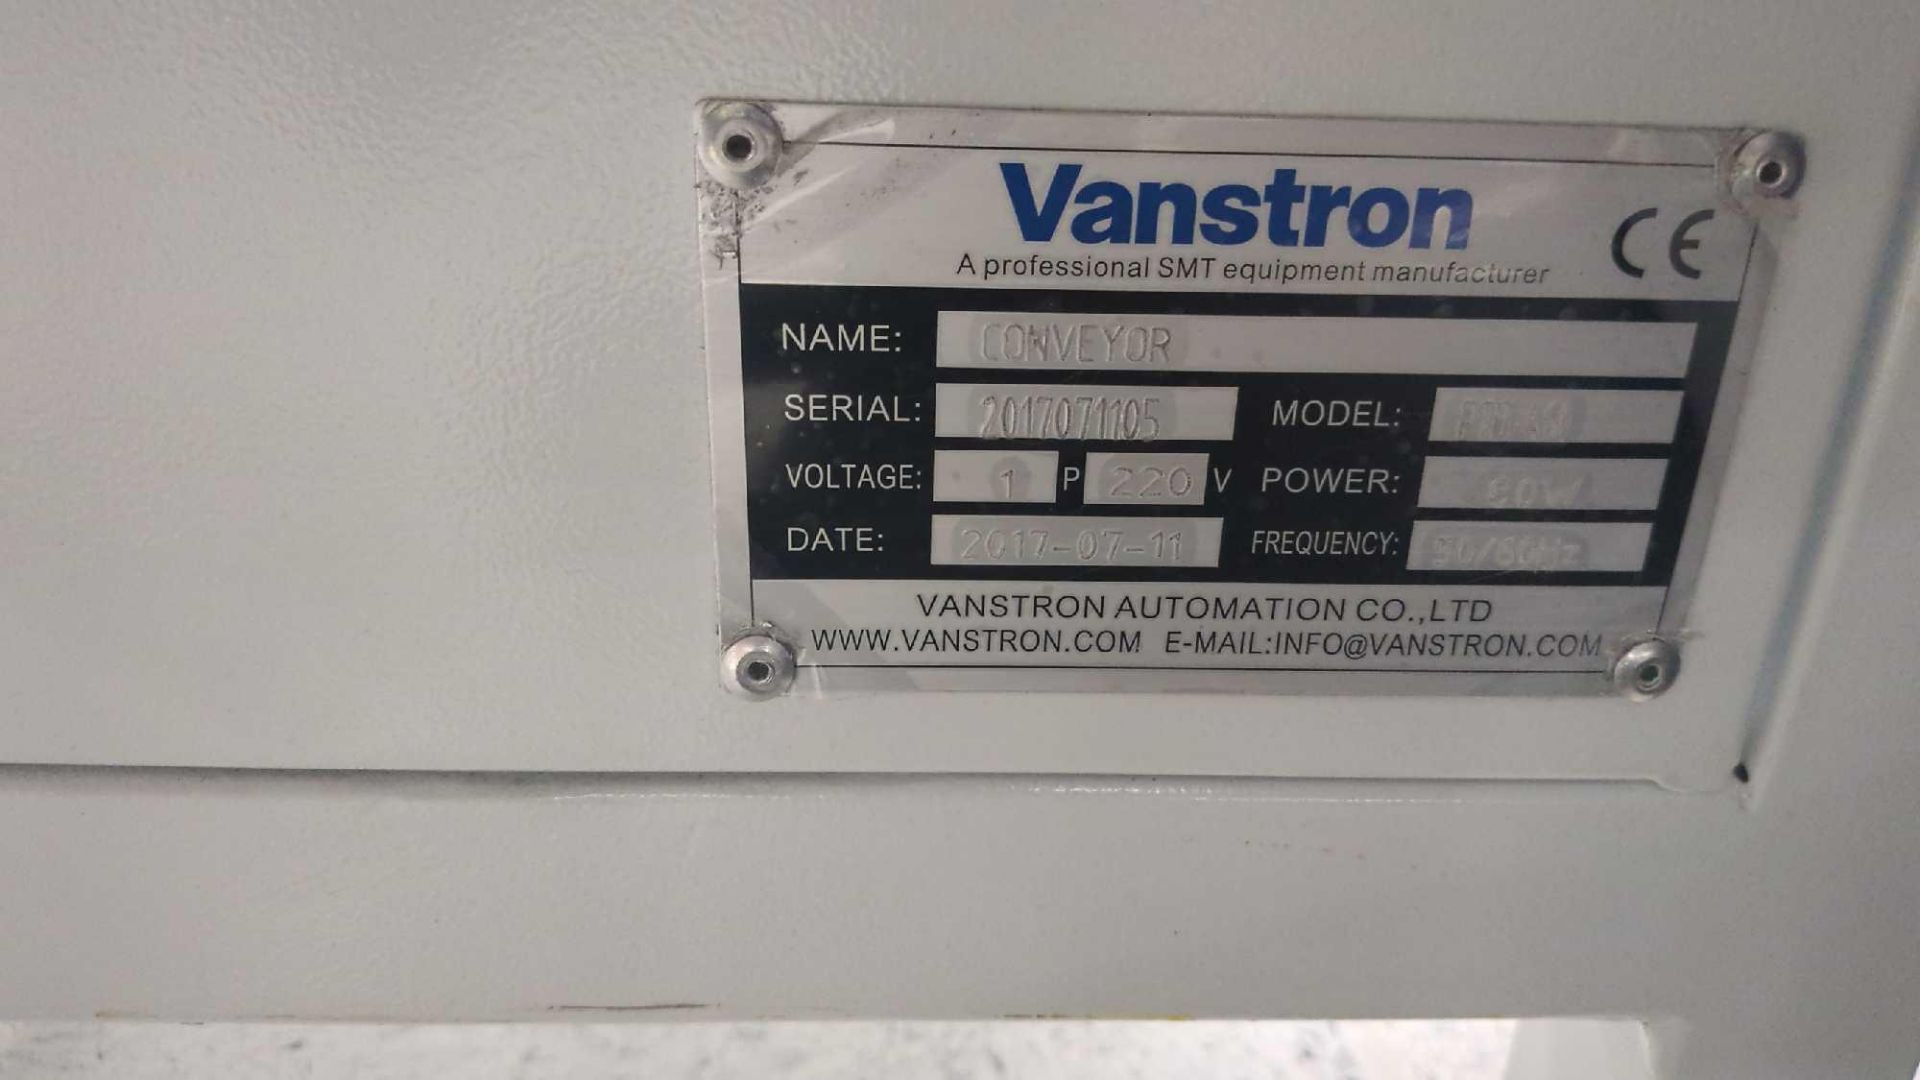 Vanstron conveyor bench - Image 2 of 3